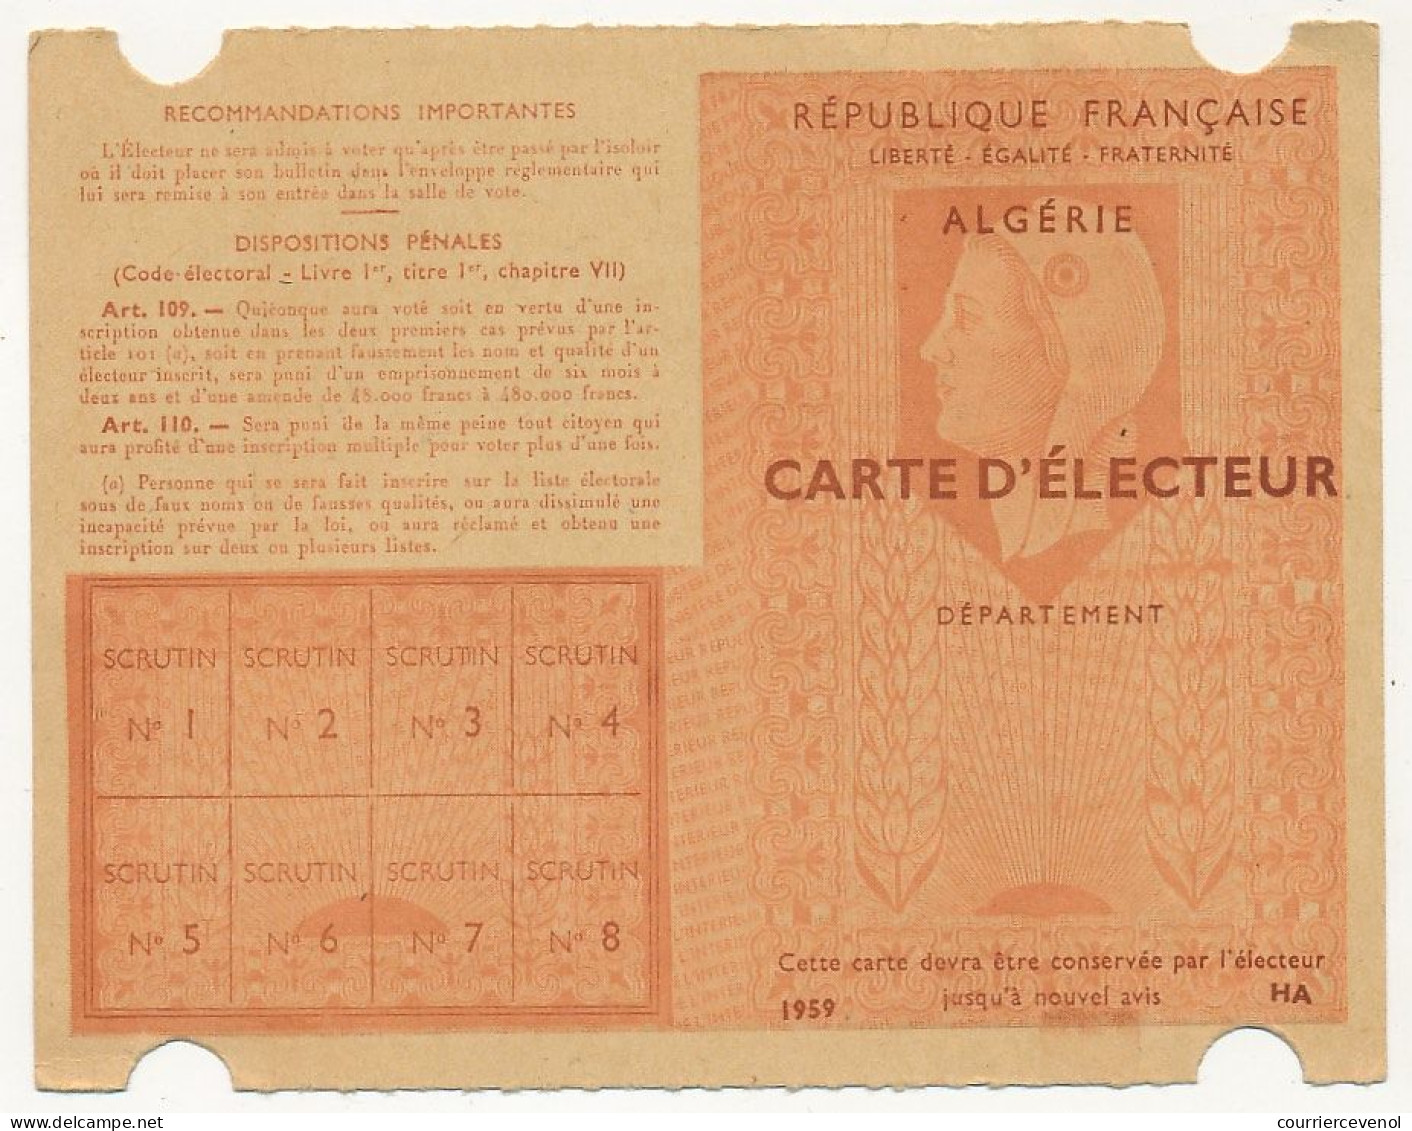 FRANCE / ALGERIE - Carte D'électeur 1959 Algérie - Ville D'Alger - Documents Historiques